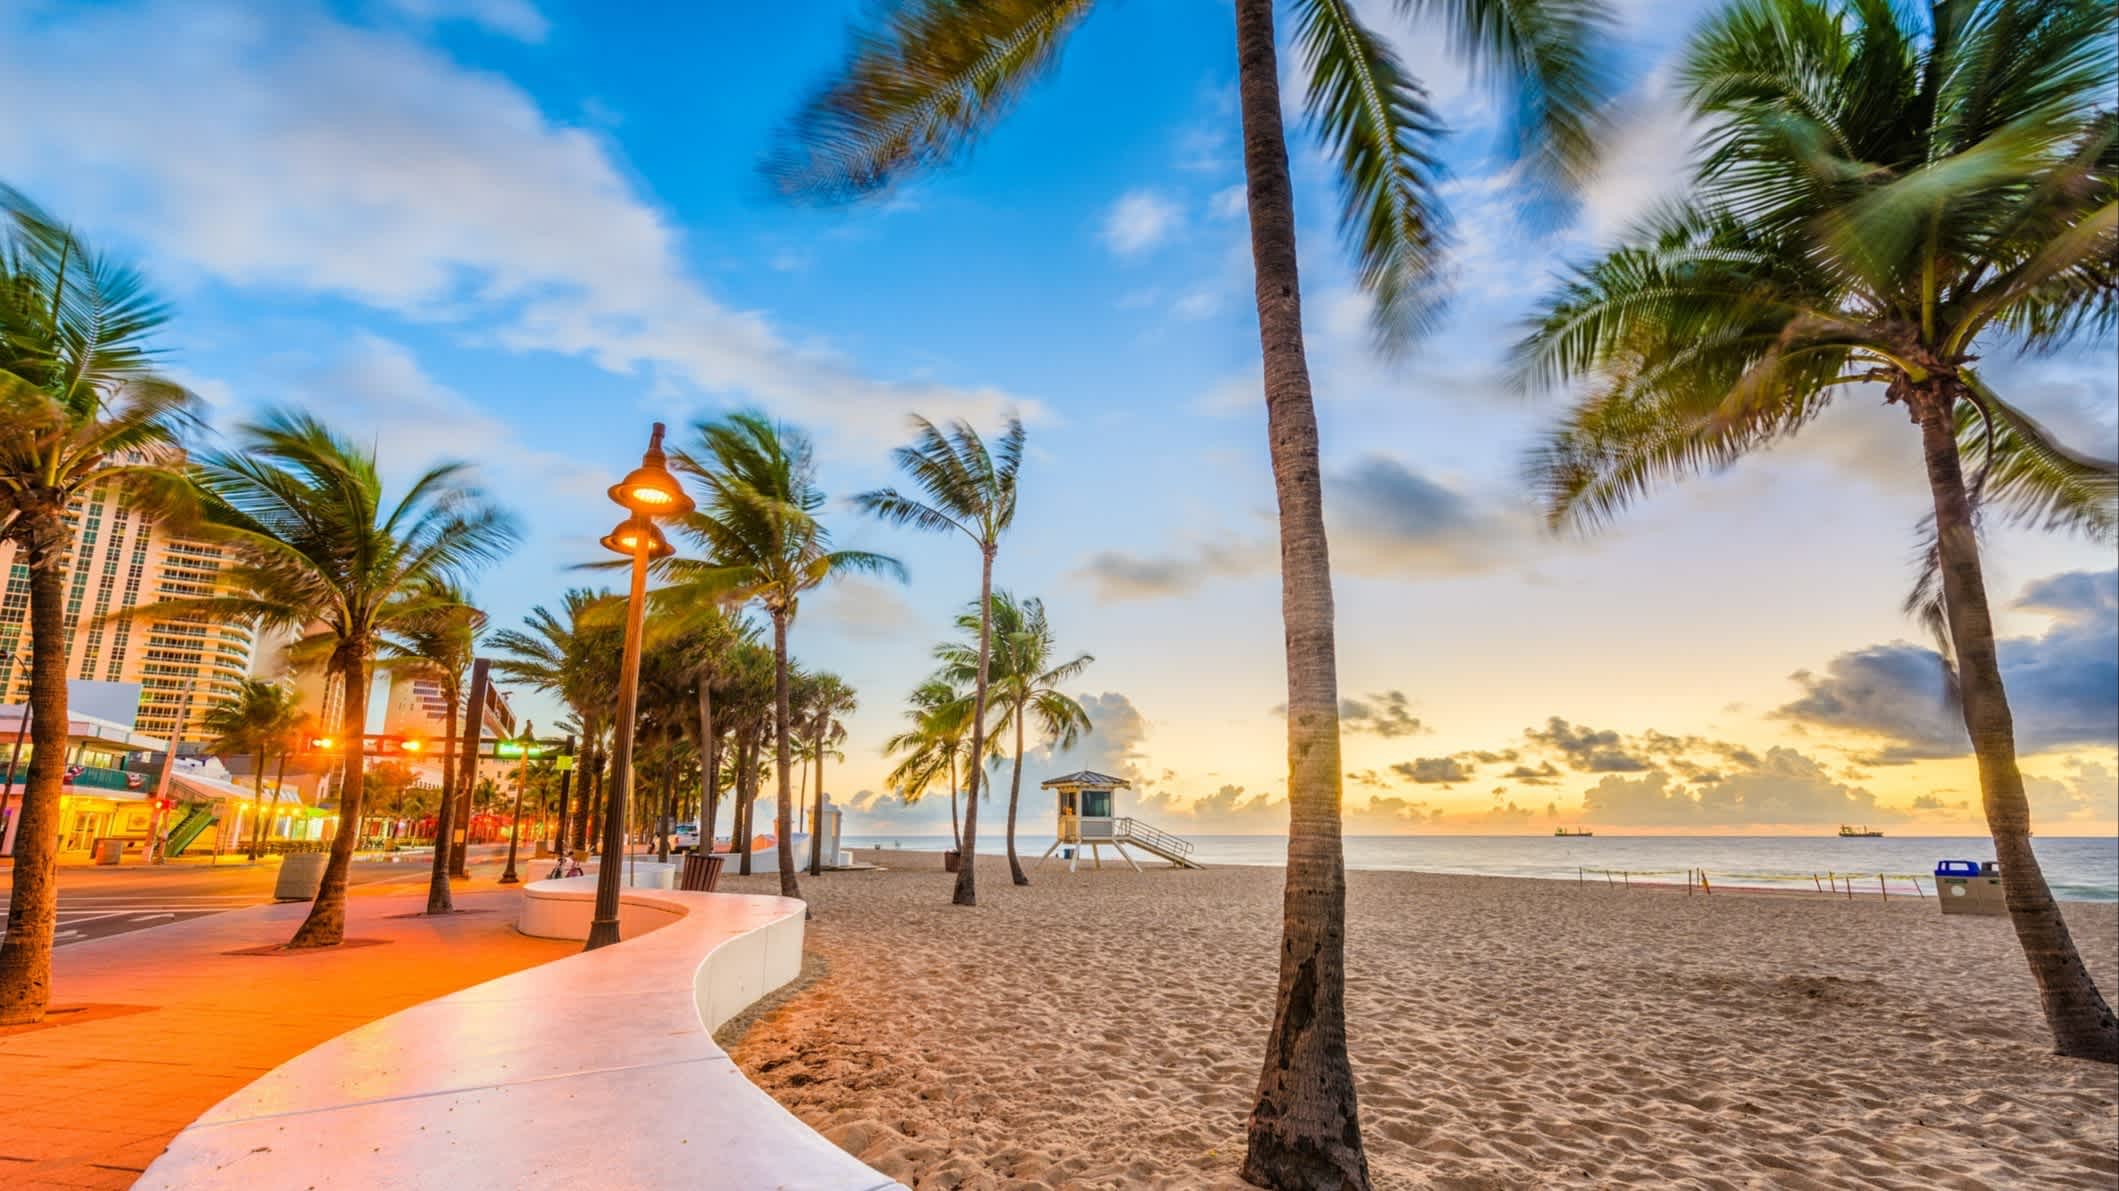 Der Strand von Fort Lauderdale Beach, Fort Lauderdale, Florida, USA bei purem Sonnenschein mit Blick auf die belebte Promenade und Palmen. 